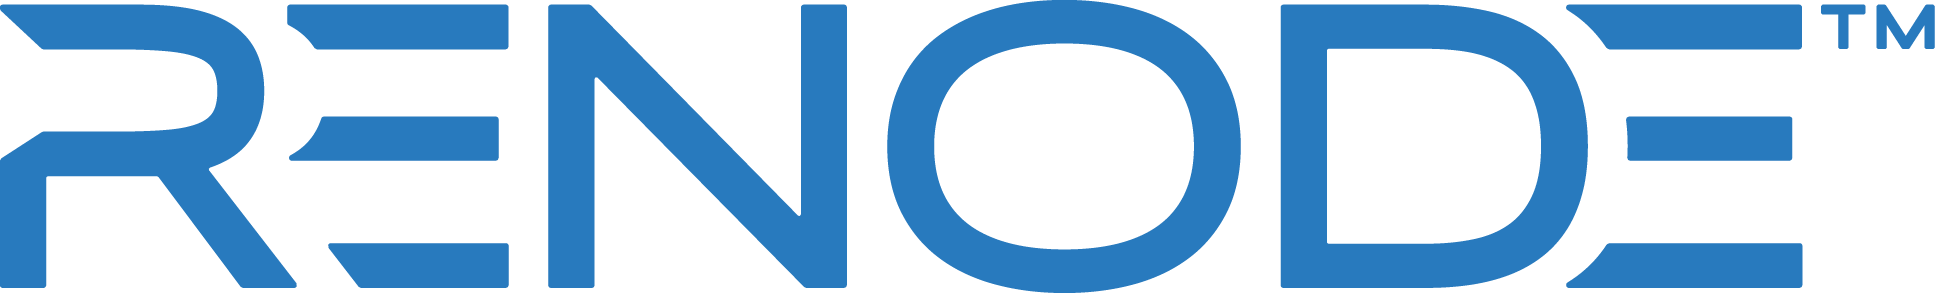 renode-logo